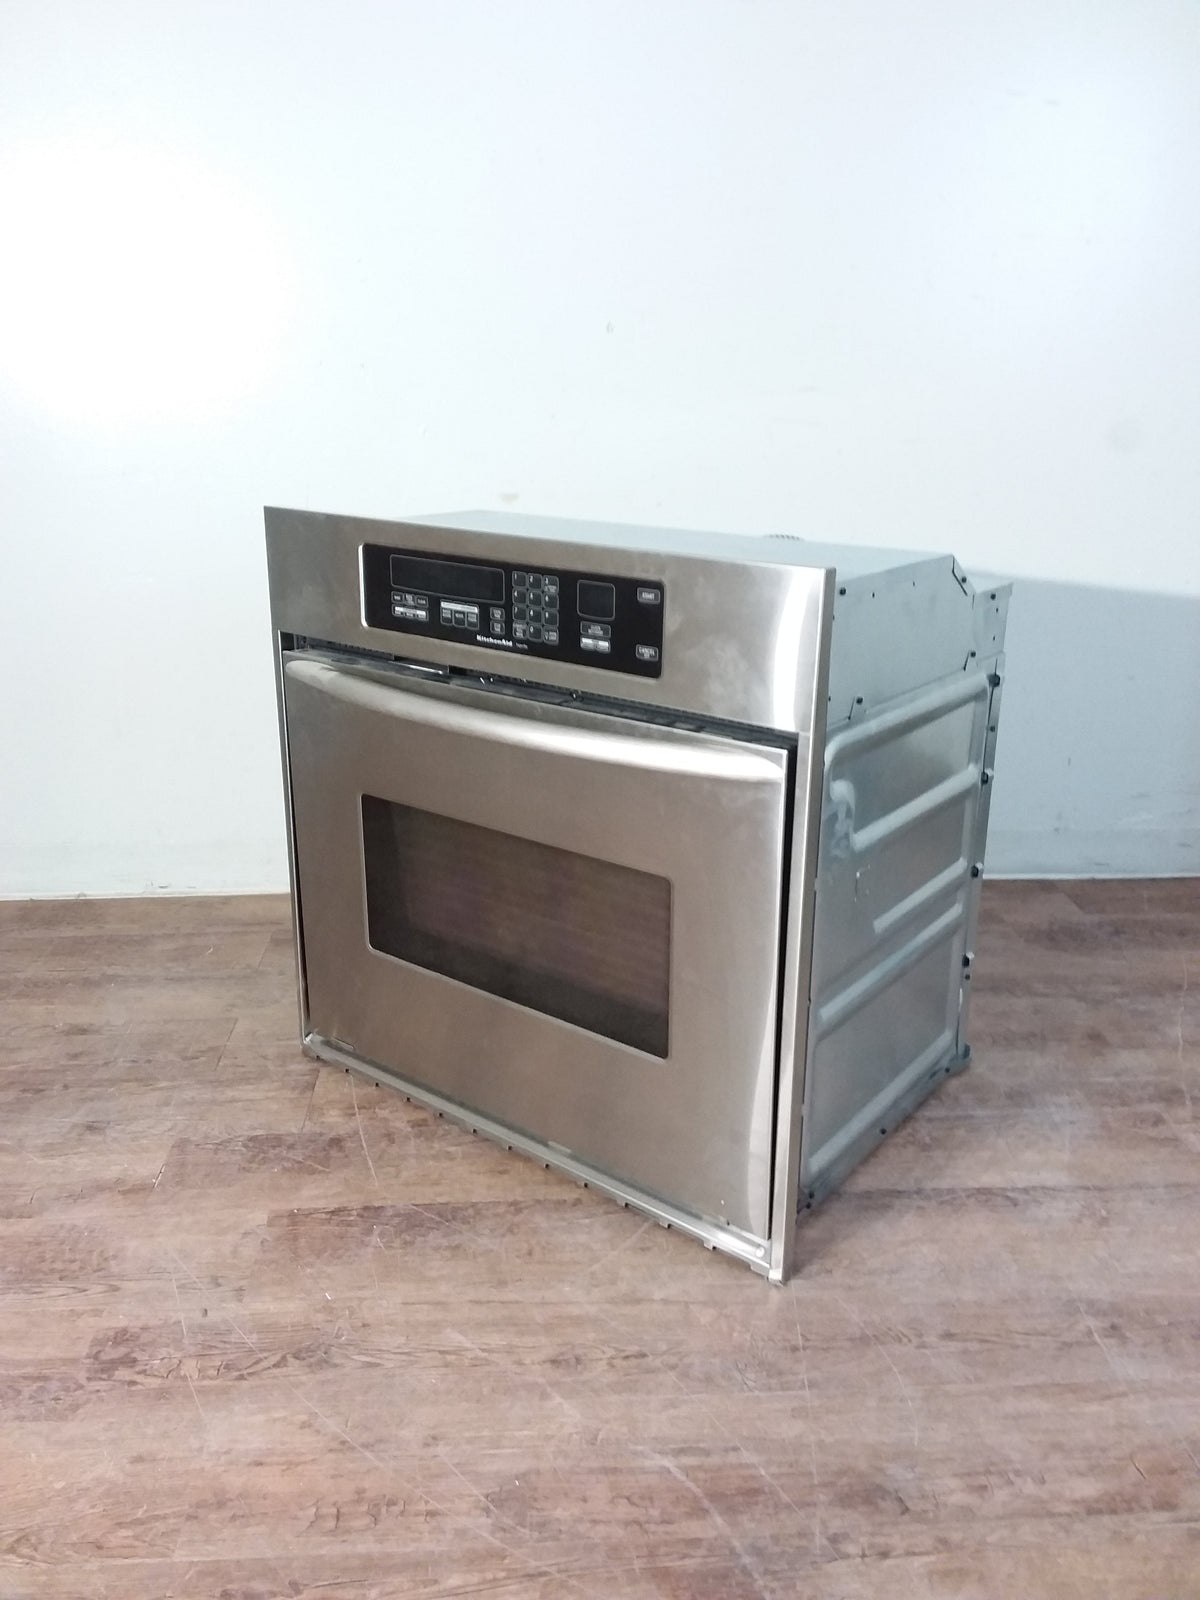 KitchenAid Wall Oven